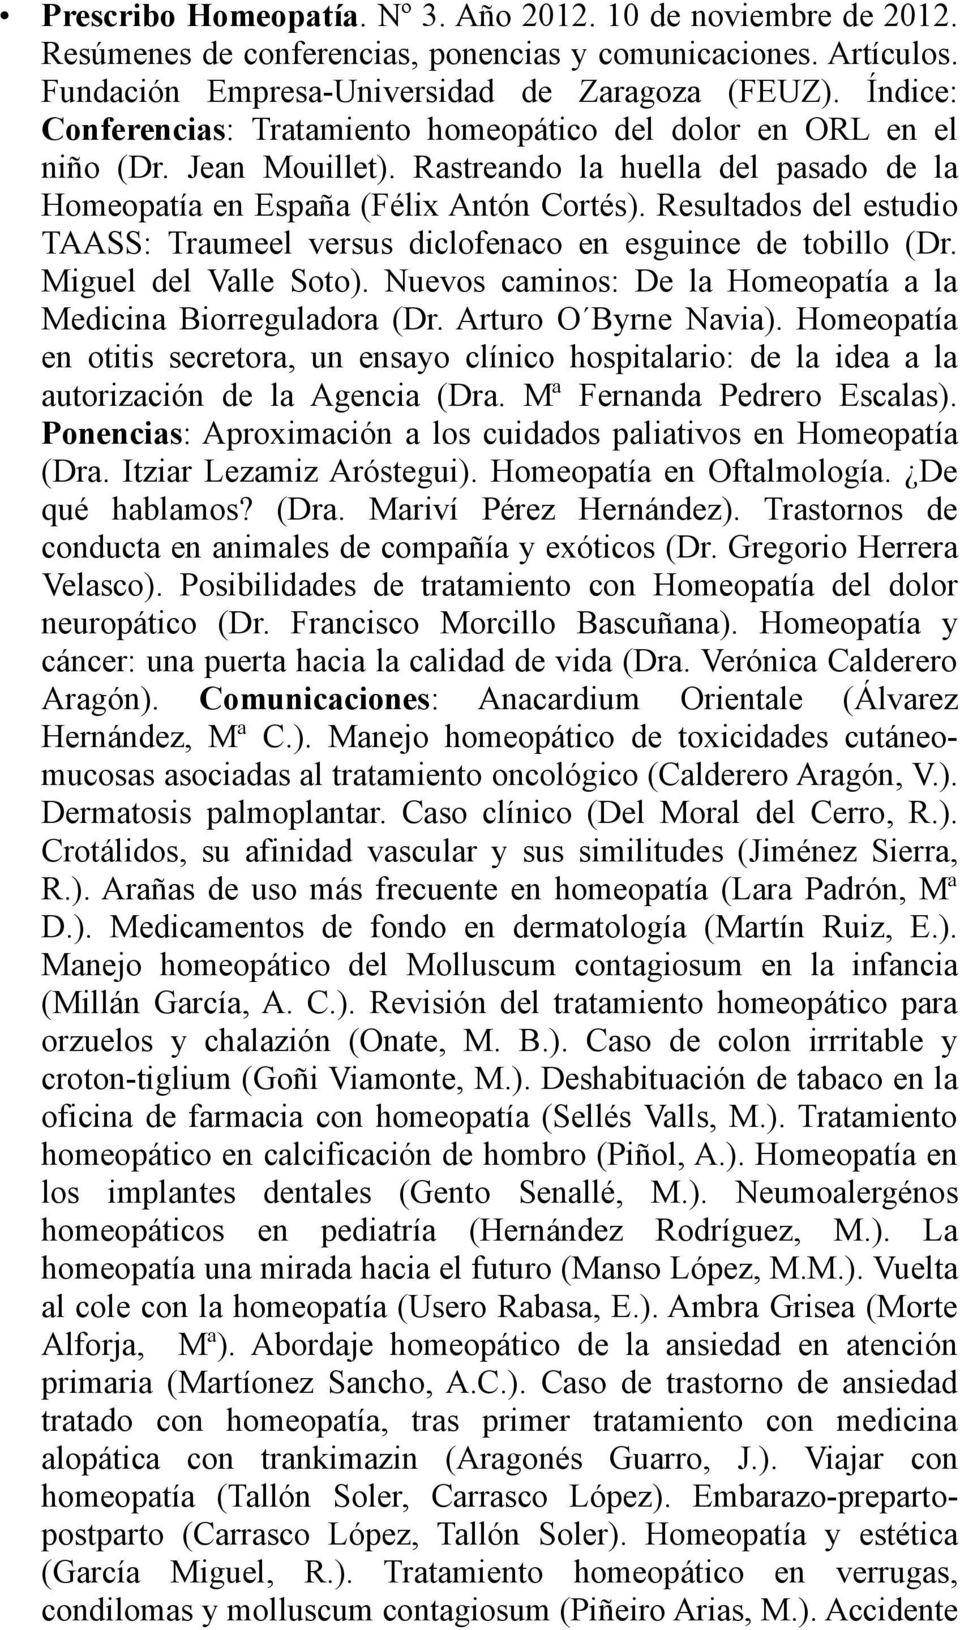 Resultados del estudio TAASS: Traumeel versus diclofenaco en esguince de tobillo (Dr. Miguel del Valle Soto). Nuevos caminos: De la Homeopatía a la Medicina Biorreguladora (Dr. Arturo O Byrne Navia).